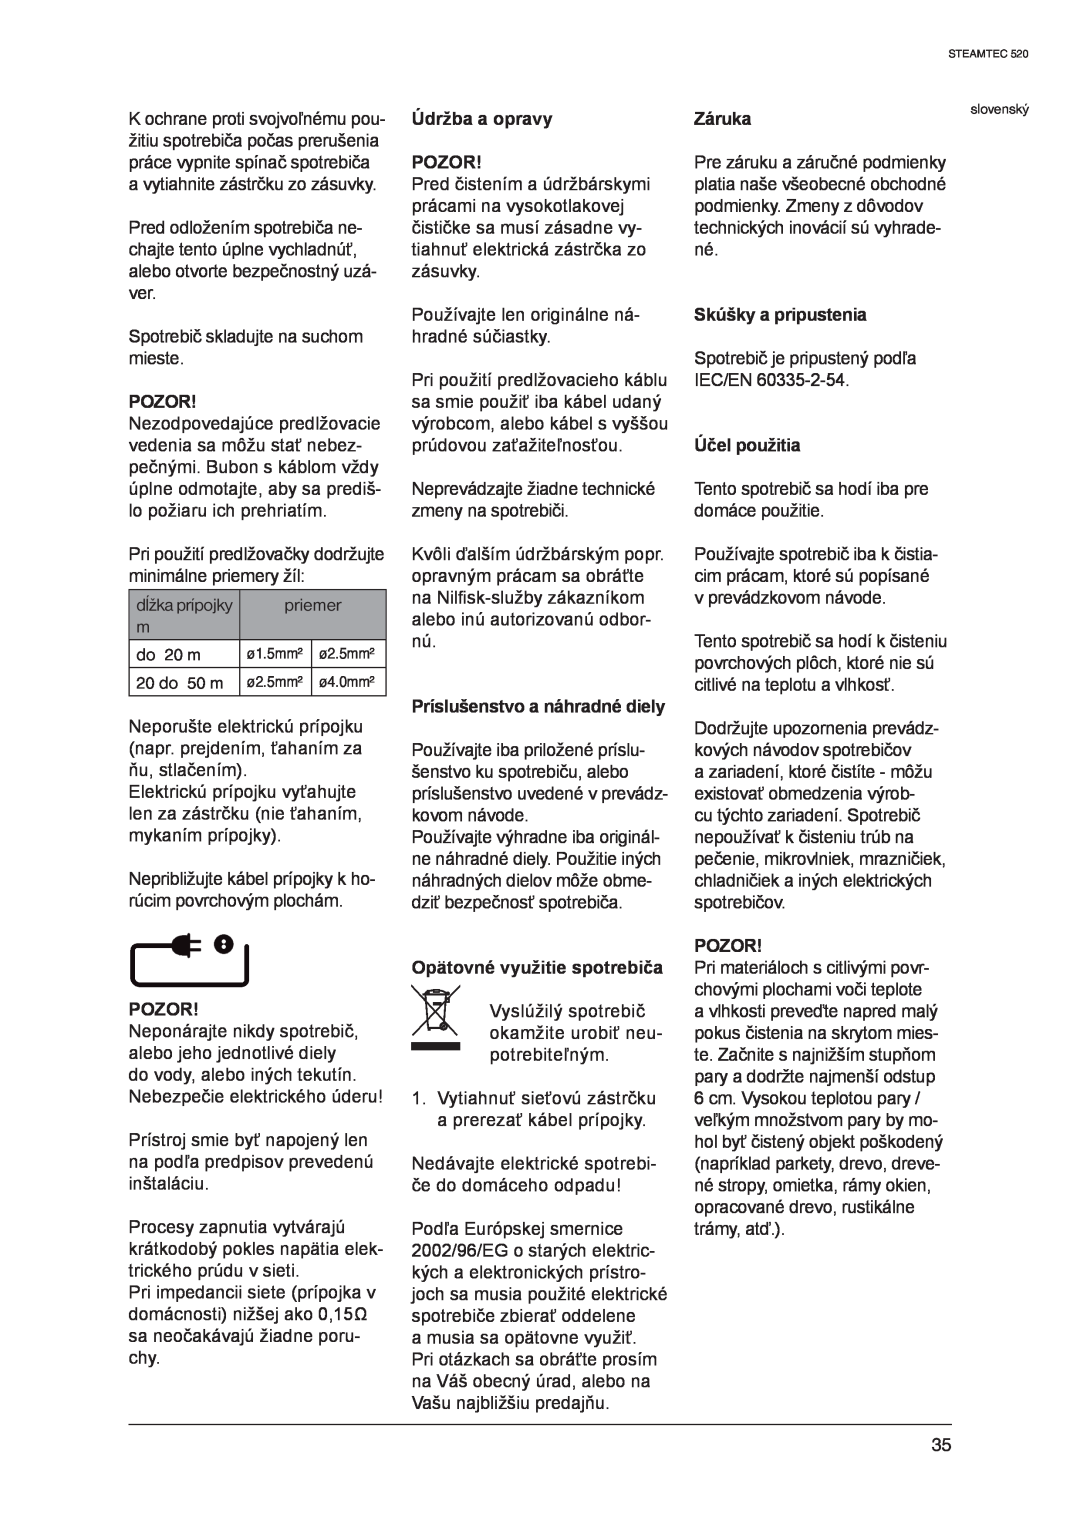 Nilfisk-ALTO 520 manual Pozor, Údržba a opravy POZOR, Príslušenstvo a náhradné diely, Opätovné využitie spotrebiča, Záruka 